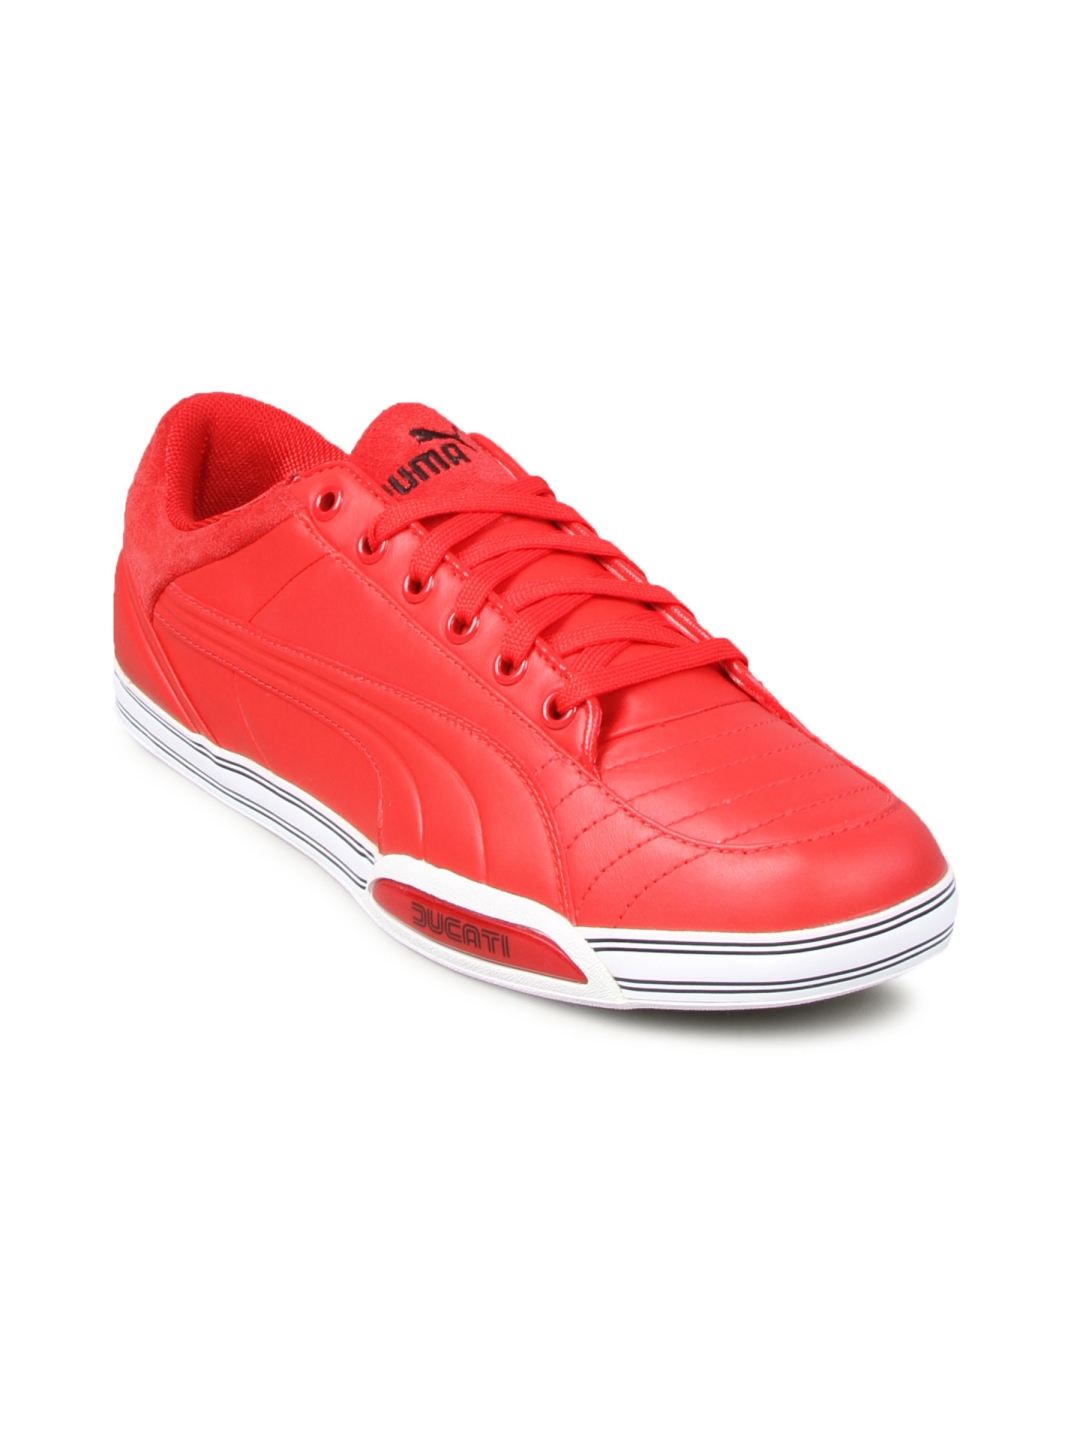 puma ducati red shoes